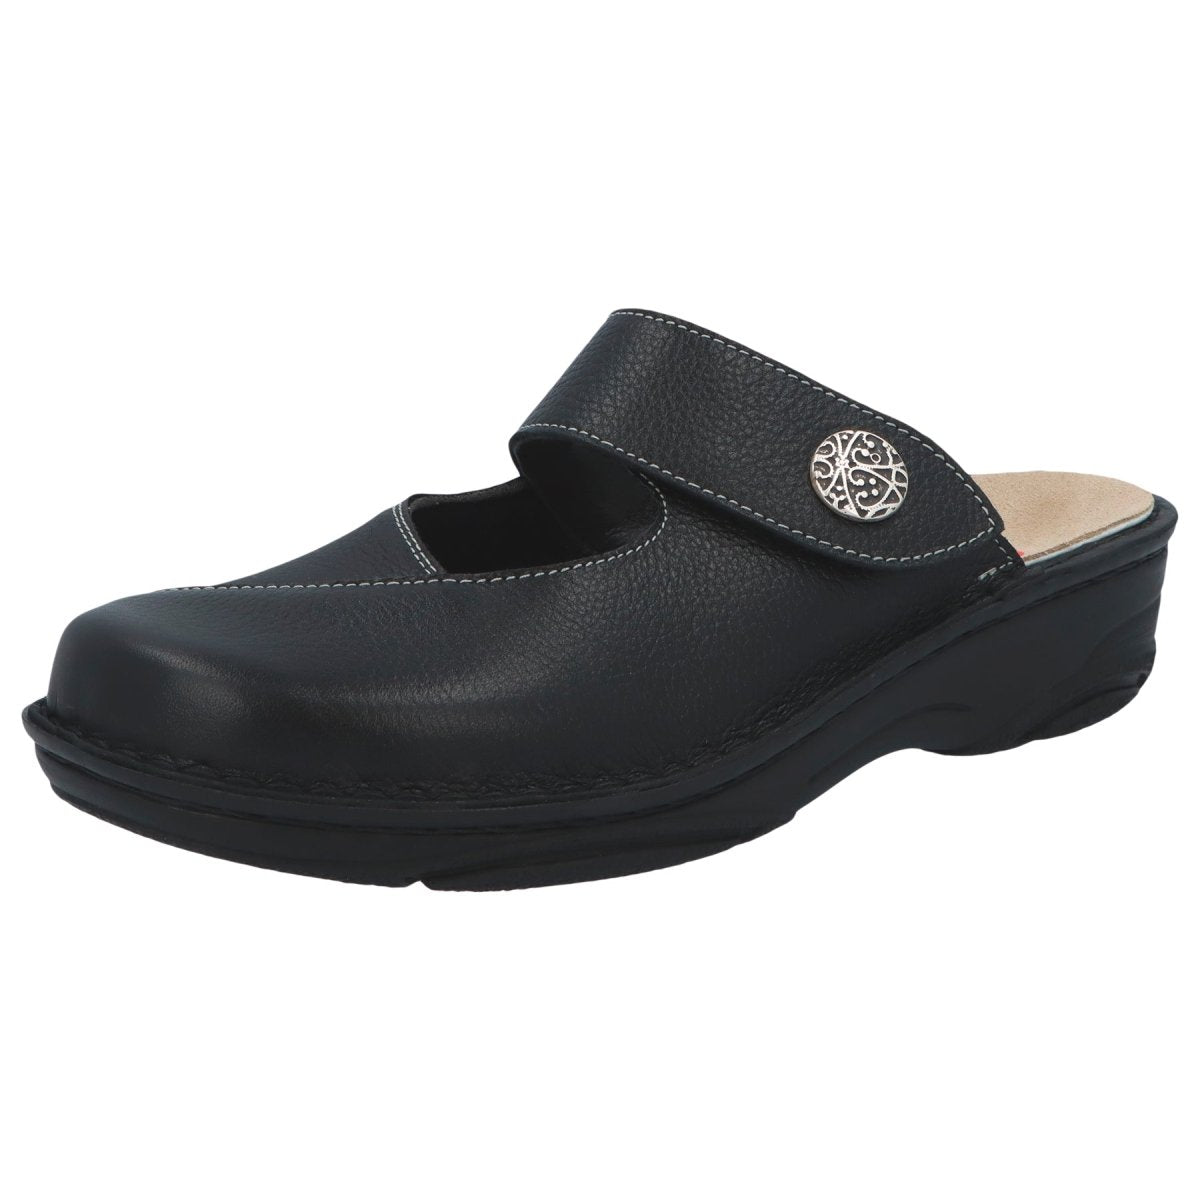 BERKEMANN HELIANE WOMEN'S CLOG IN BLACK LEATHER/STRETCH - TLW Shoes